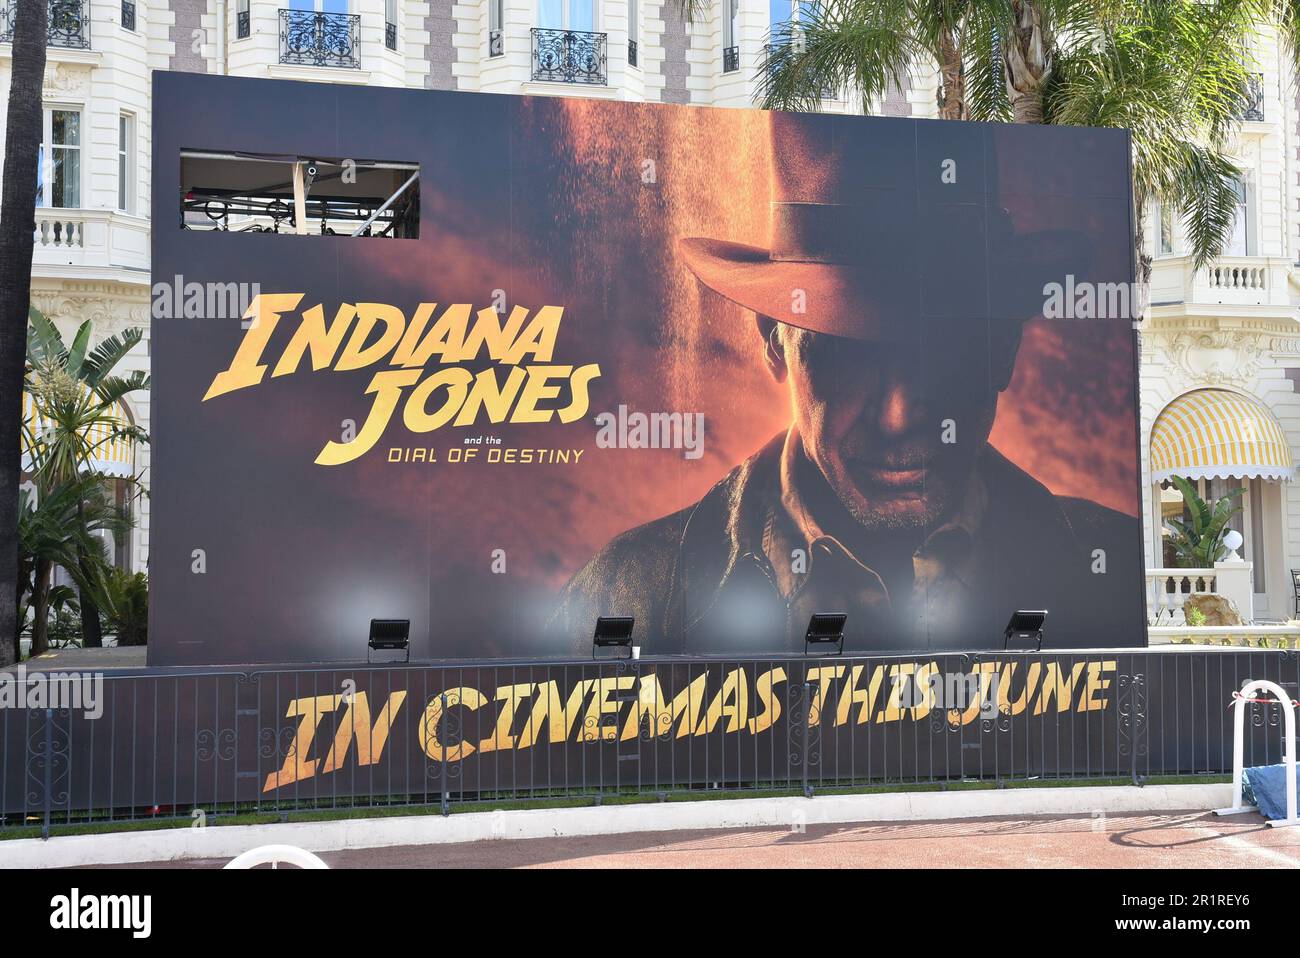 Francia, Cannes, decorazione pubblicitaria sulla croisette per il film Indiana Jones con Harison Ford, questo film è la quinta e ultima parte di questa saga. Foto Stock